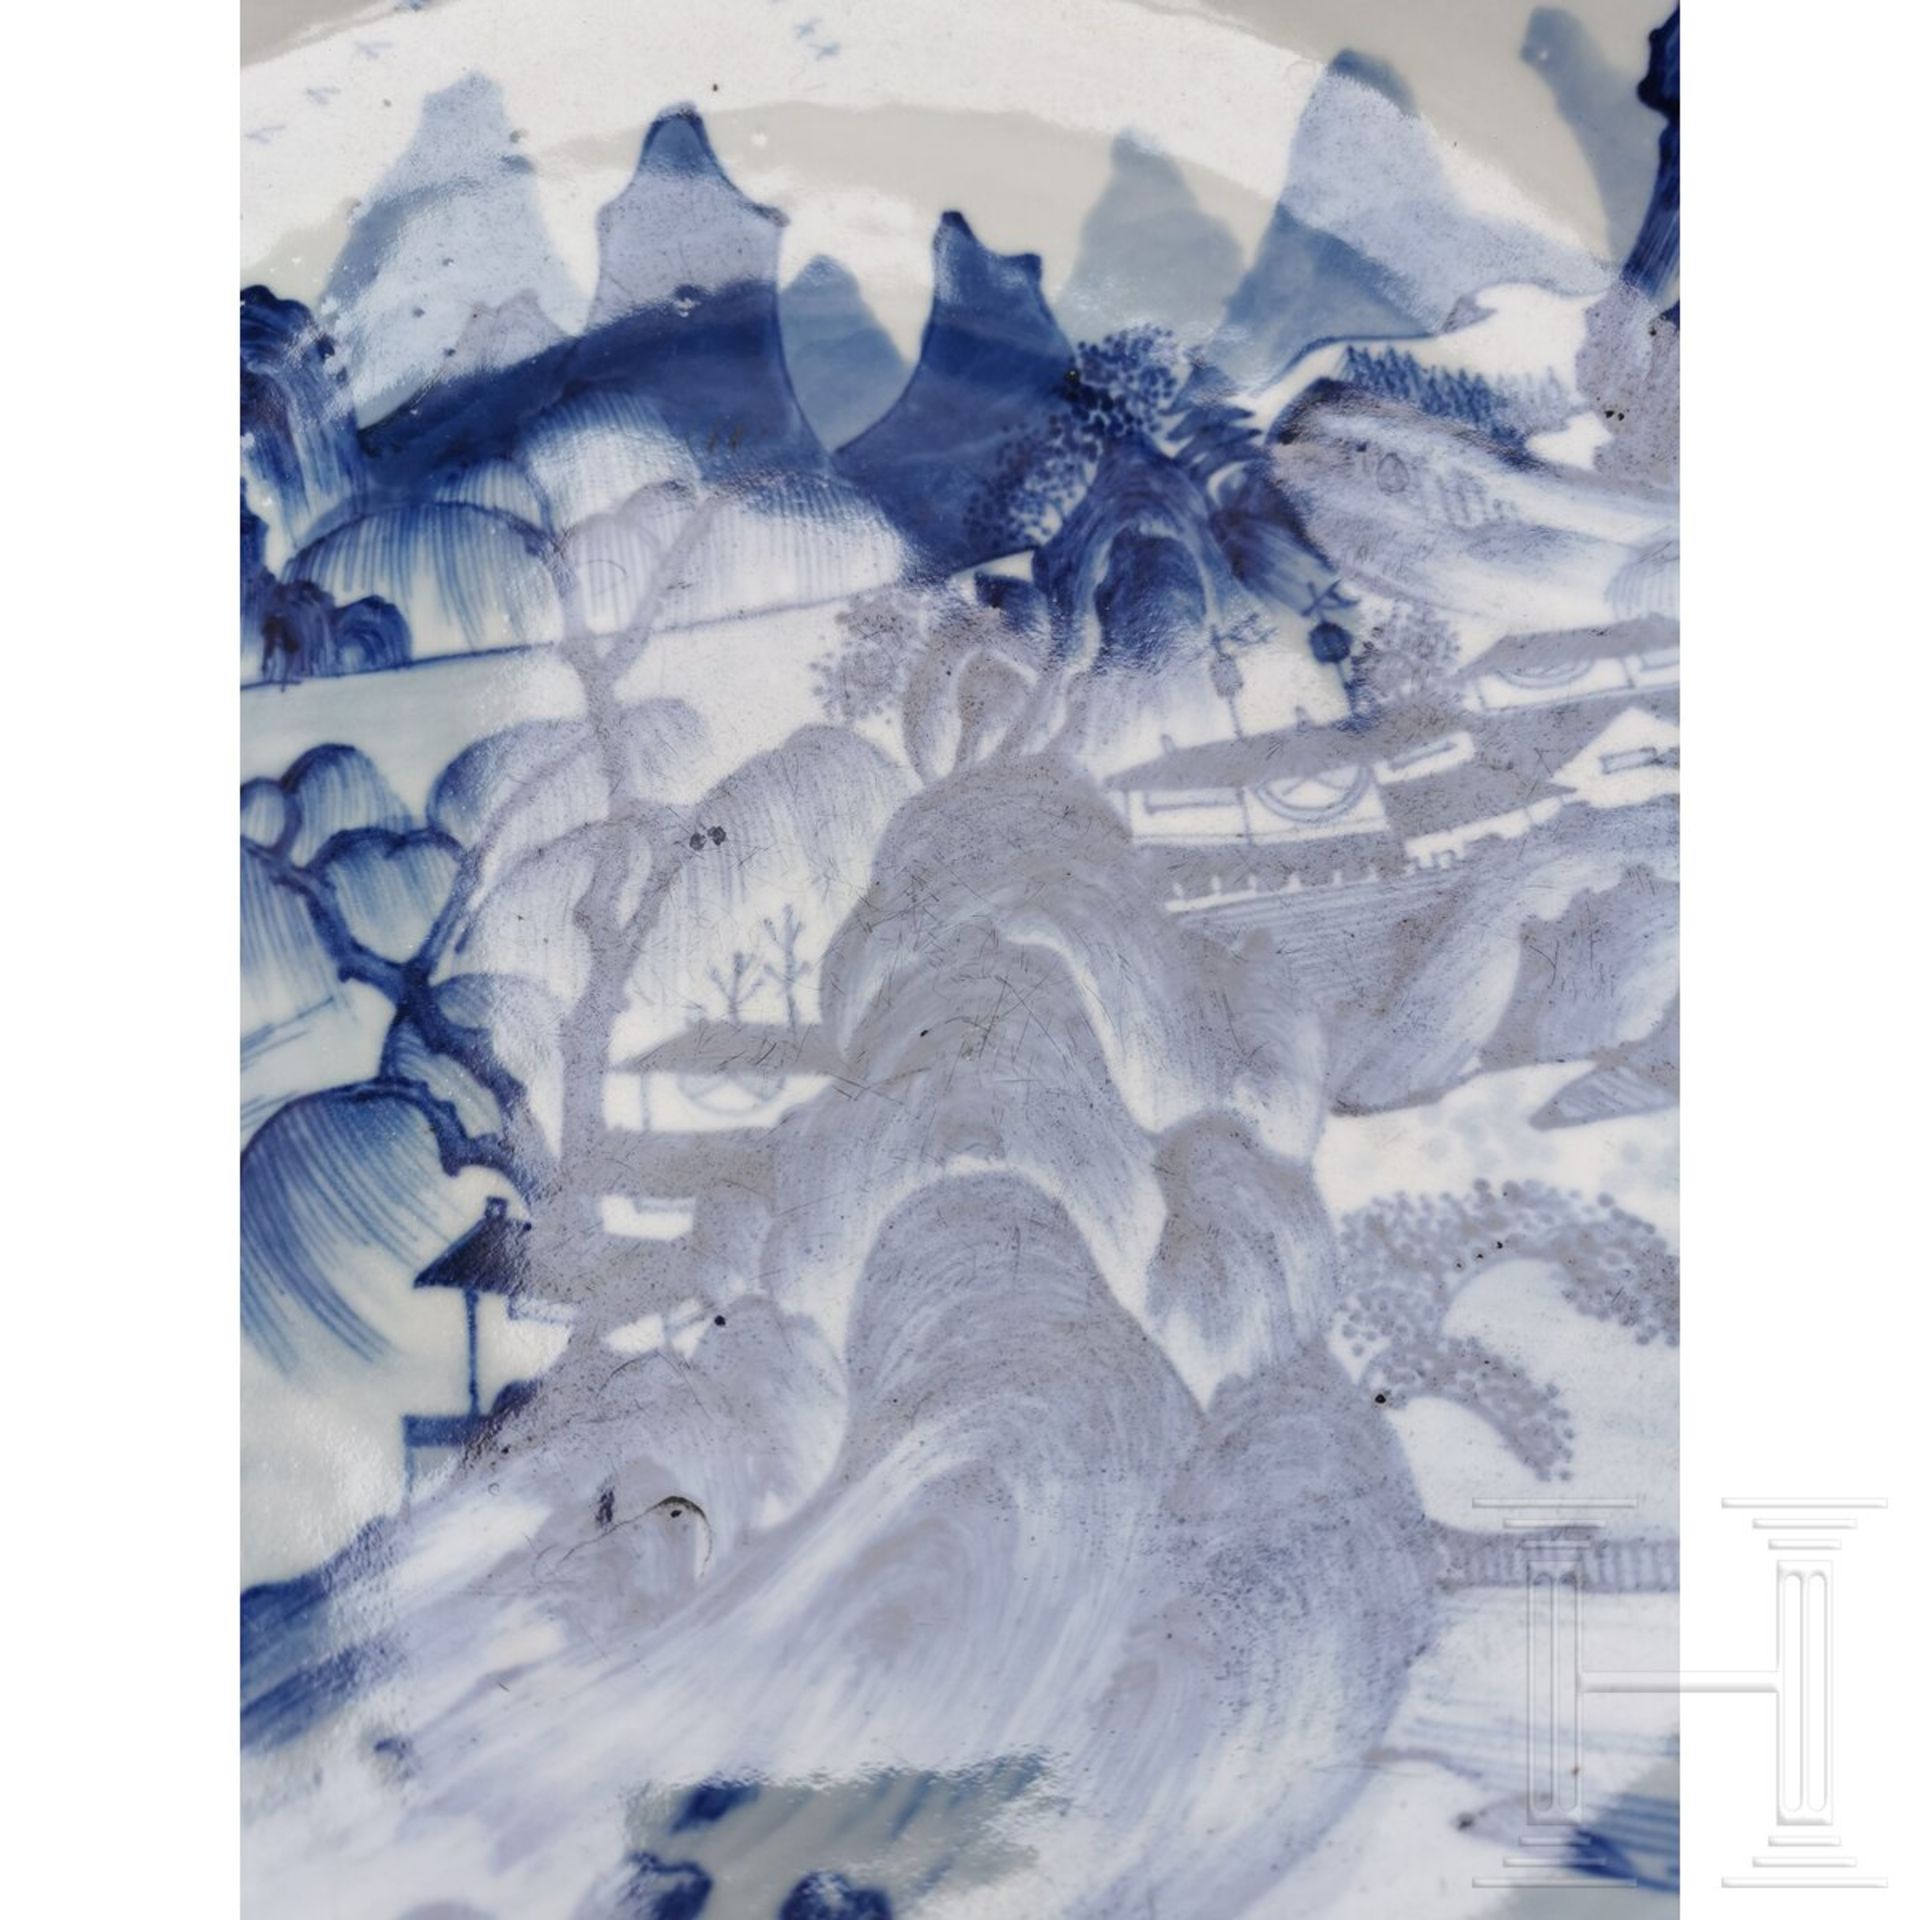 Große blaue-weiße Schale mit Seen- und Berglandschaft, China, wohl 19./20. Jhdt. - Bild 6 aus 19